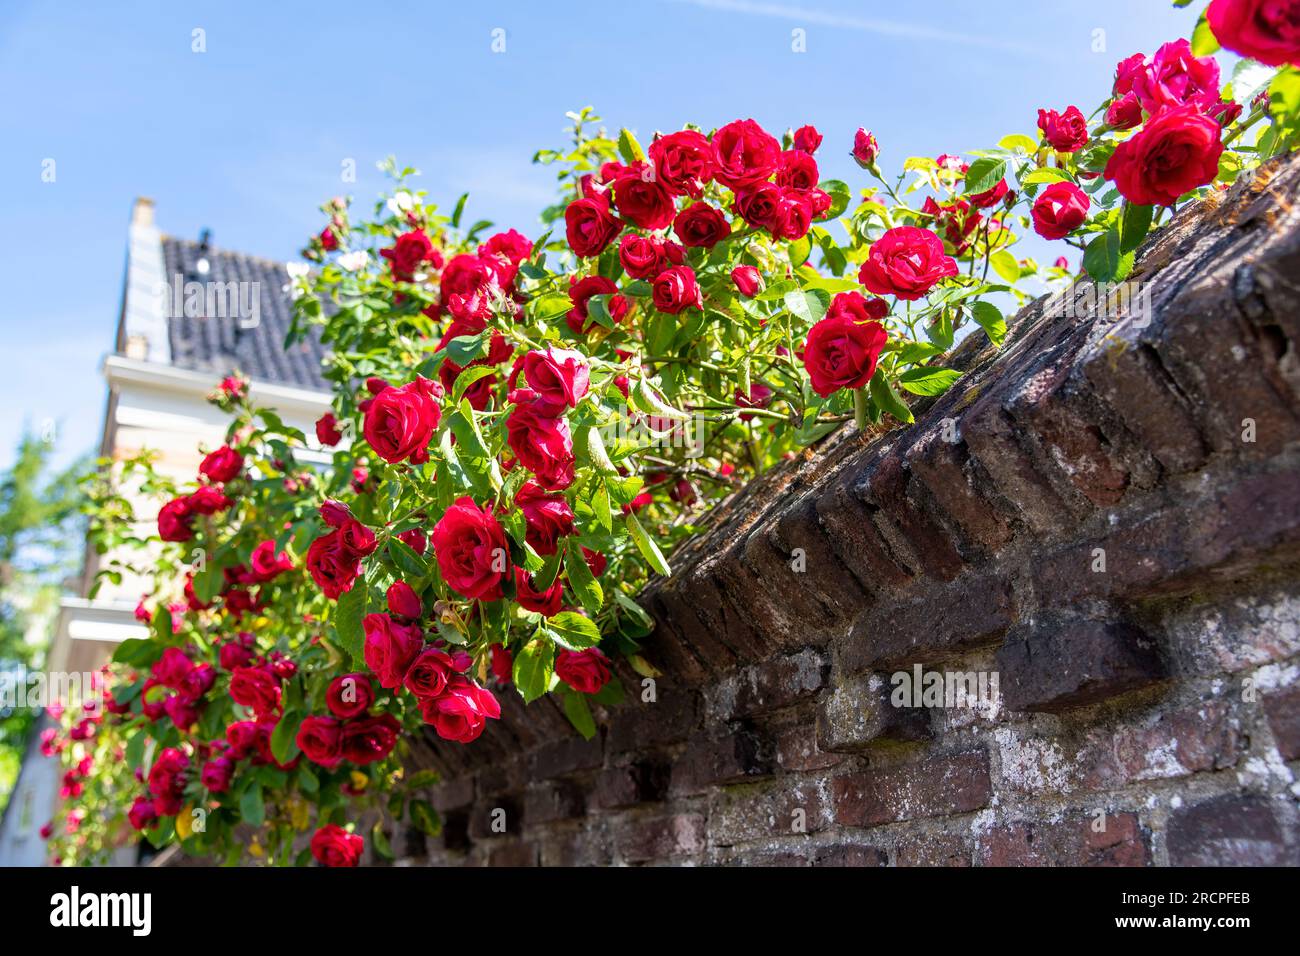 Primo piano di un vecchio muro di mattoni interni della città, ricoperto in cima con rose rosse che si arrampicano a fuoco Foto Stock